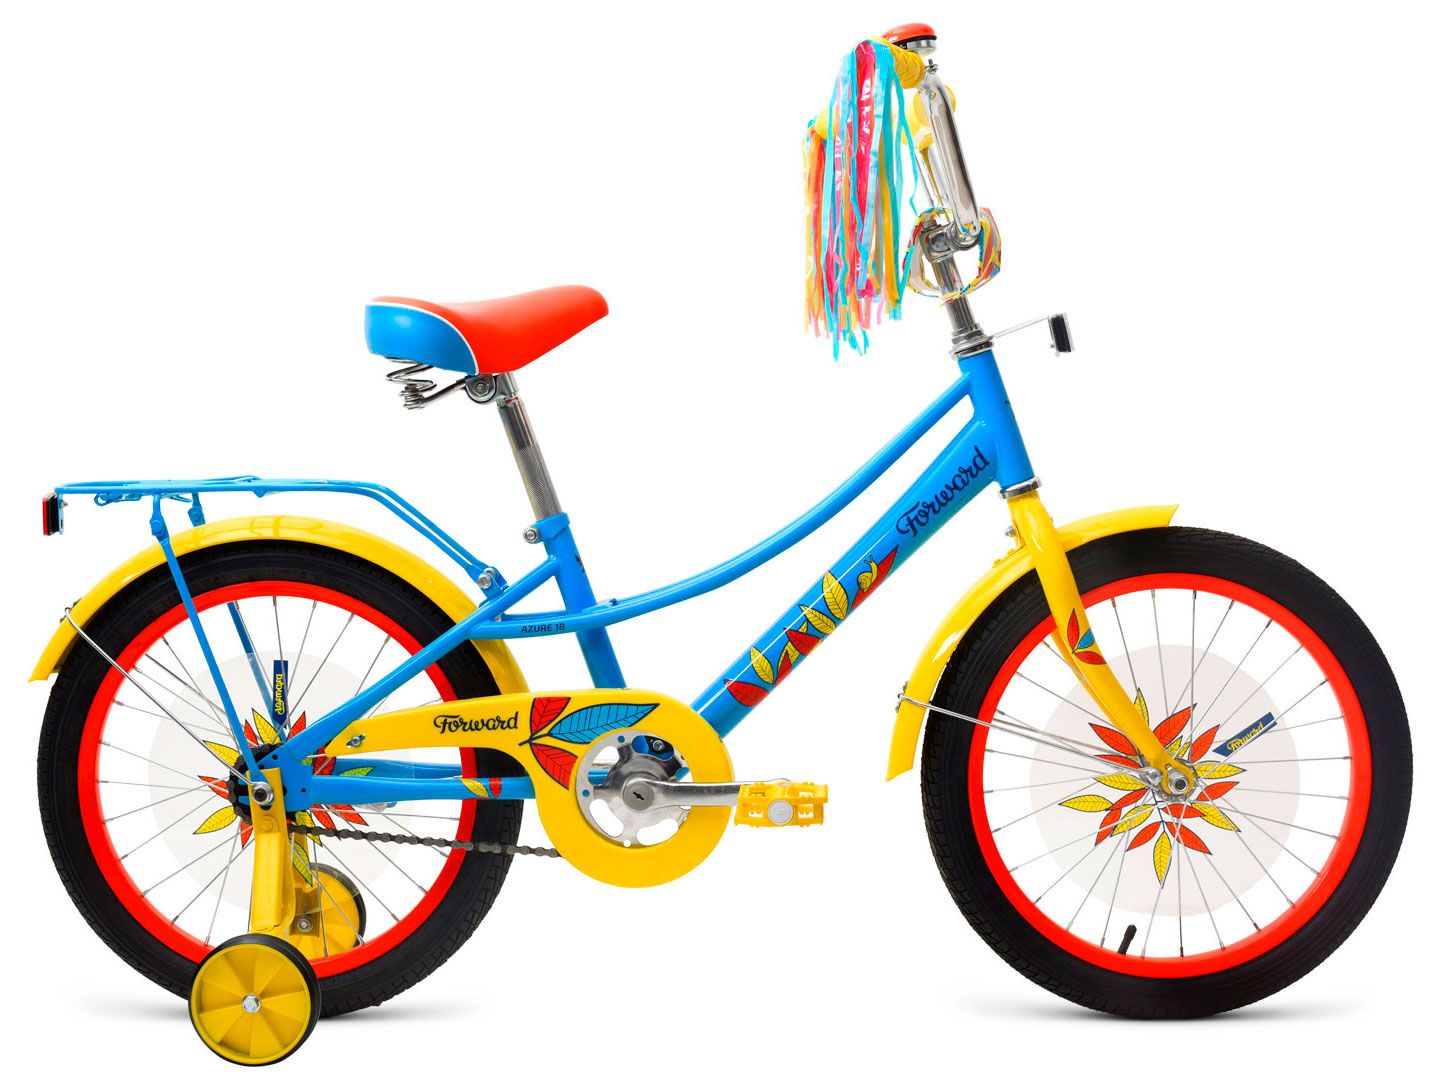  Отзывы о Трехколесный детский велосипед Forward Azure 18 2018